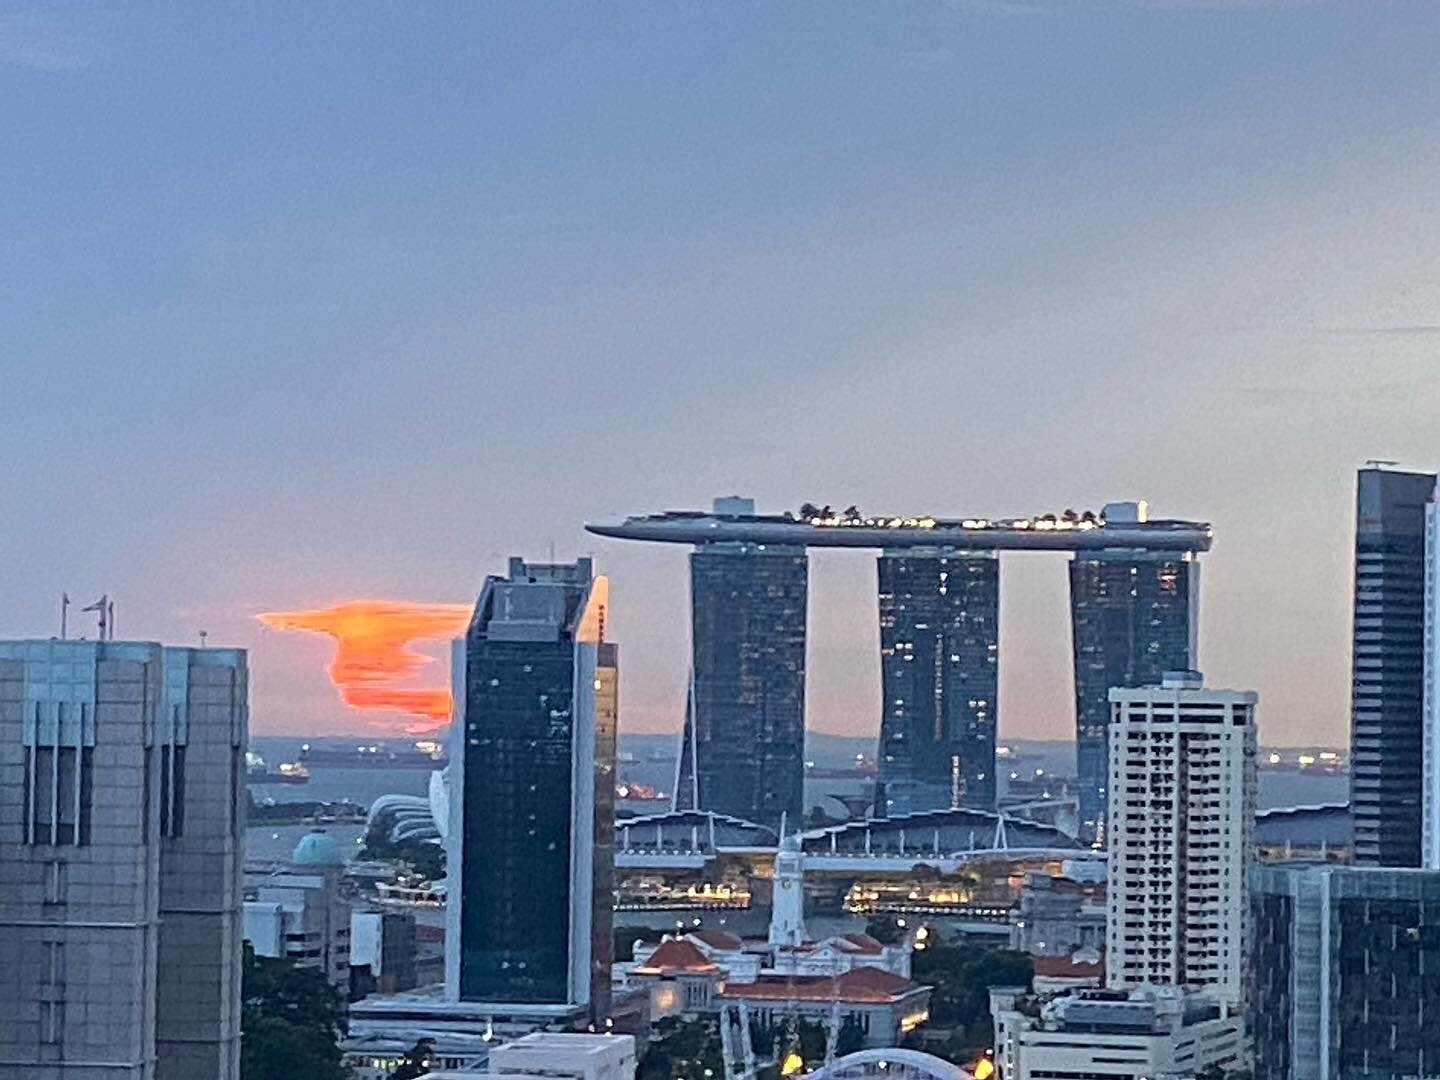 Last sunrise in Singapore #untilthenexttine #❤️singapore